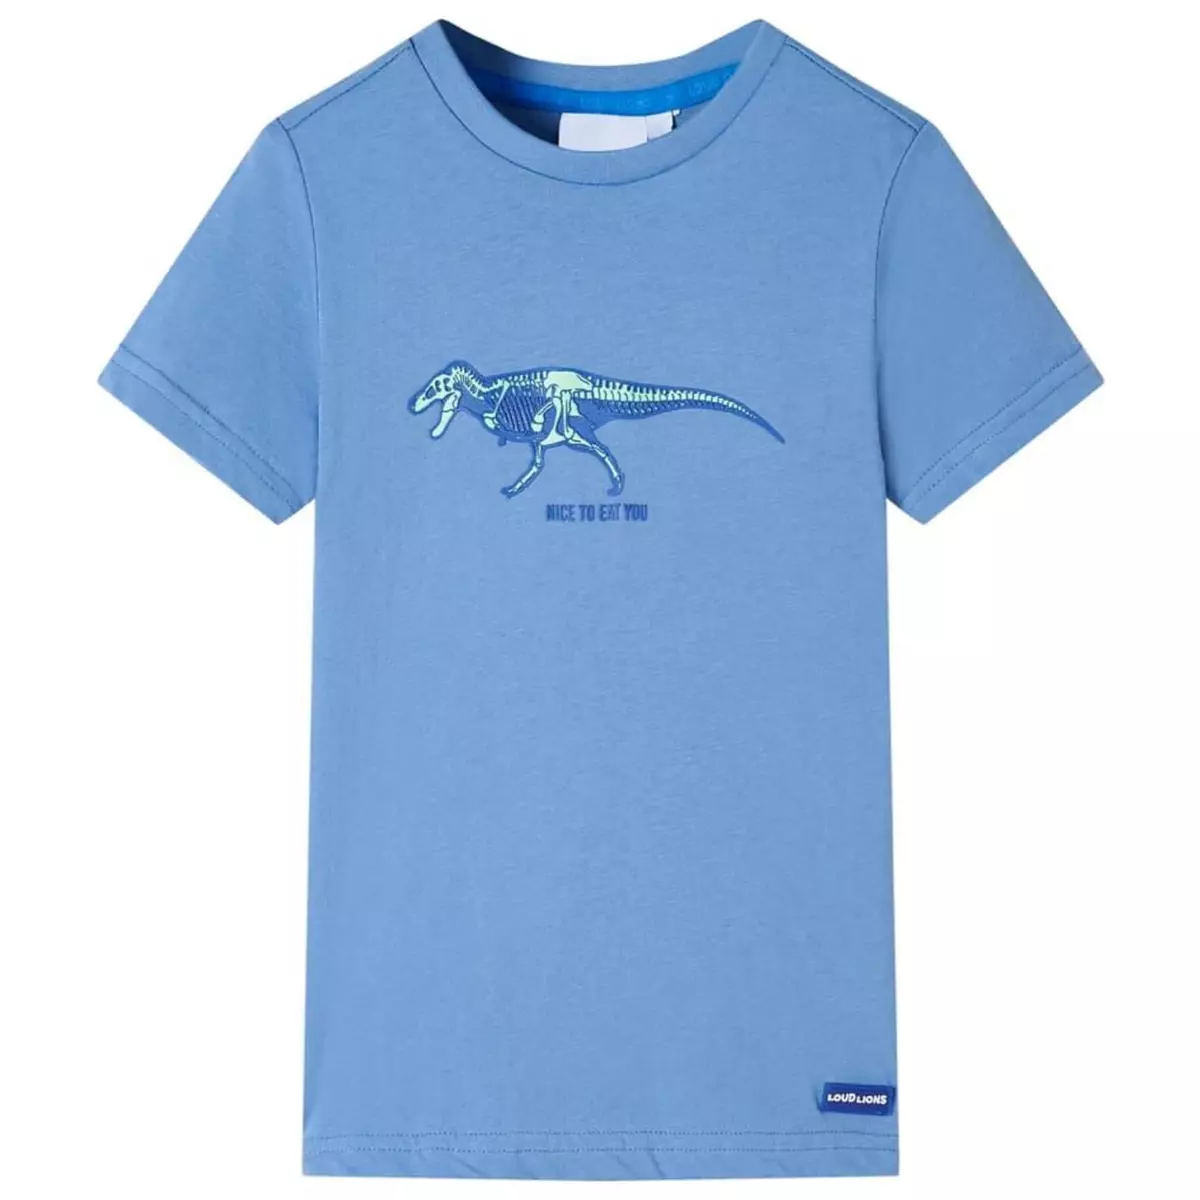 VIDAXL T-shirt pour enfants bleu moyen 128